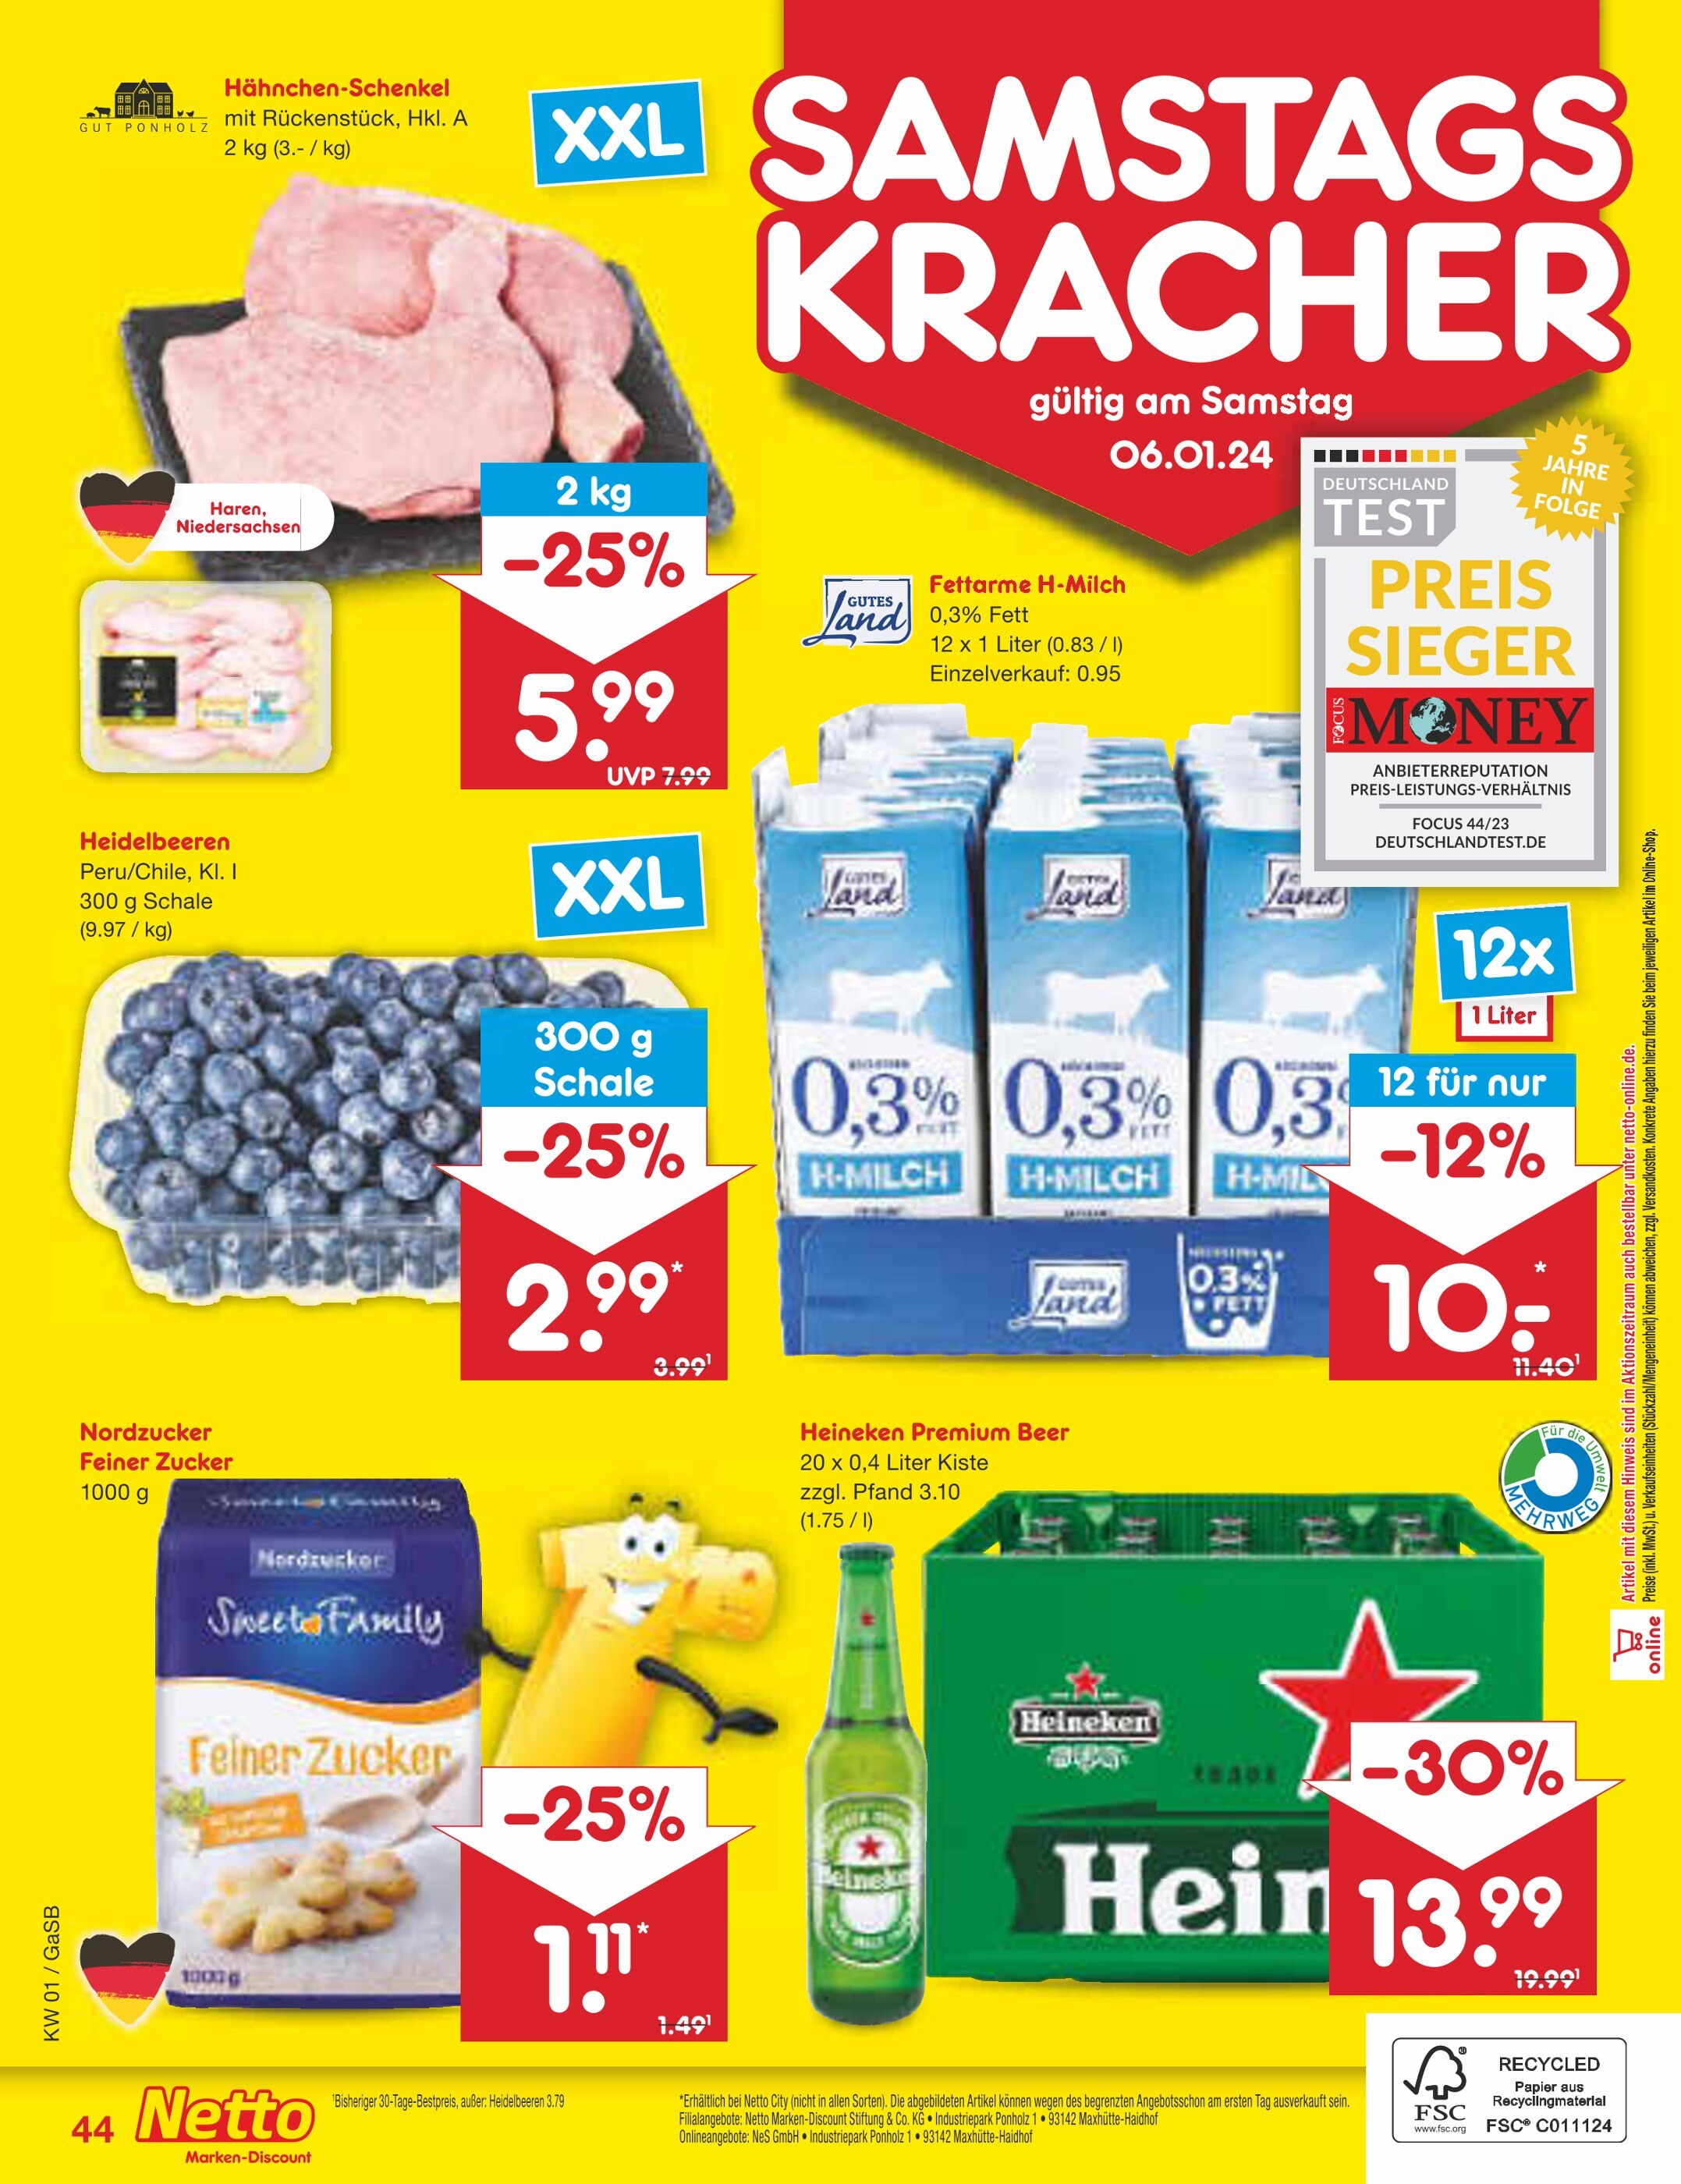 Hähnchen günstig Angebote 🔥 jetzt - in Bremerhaven kaufen!